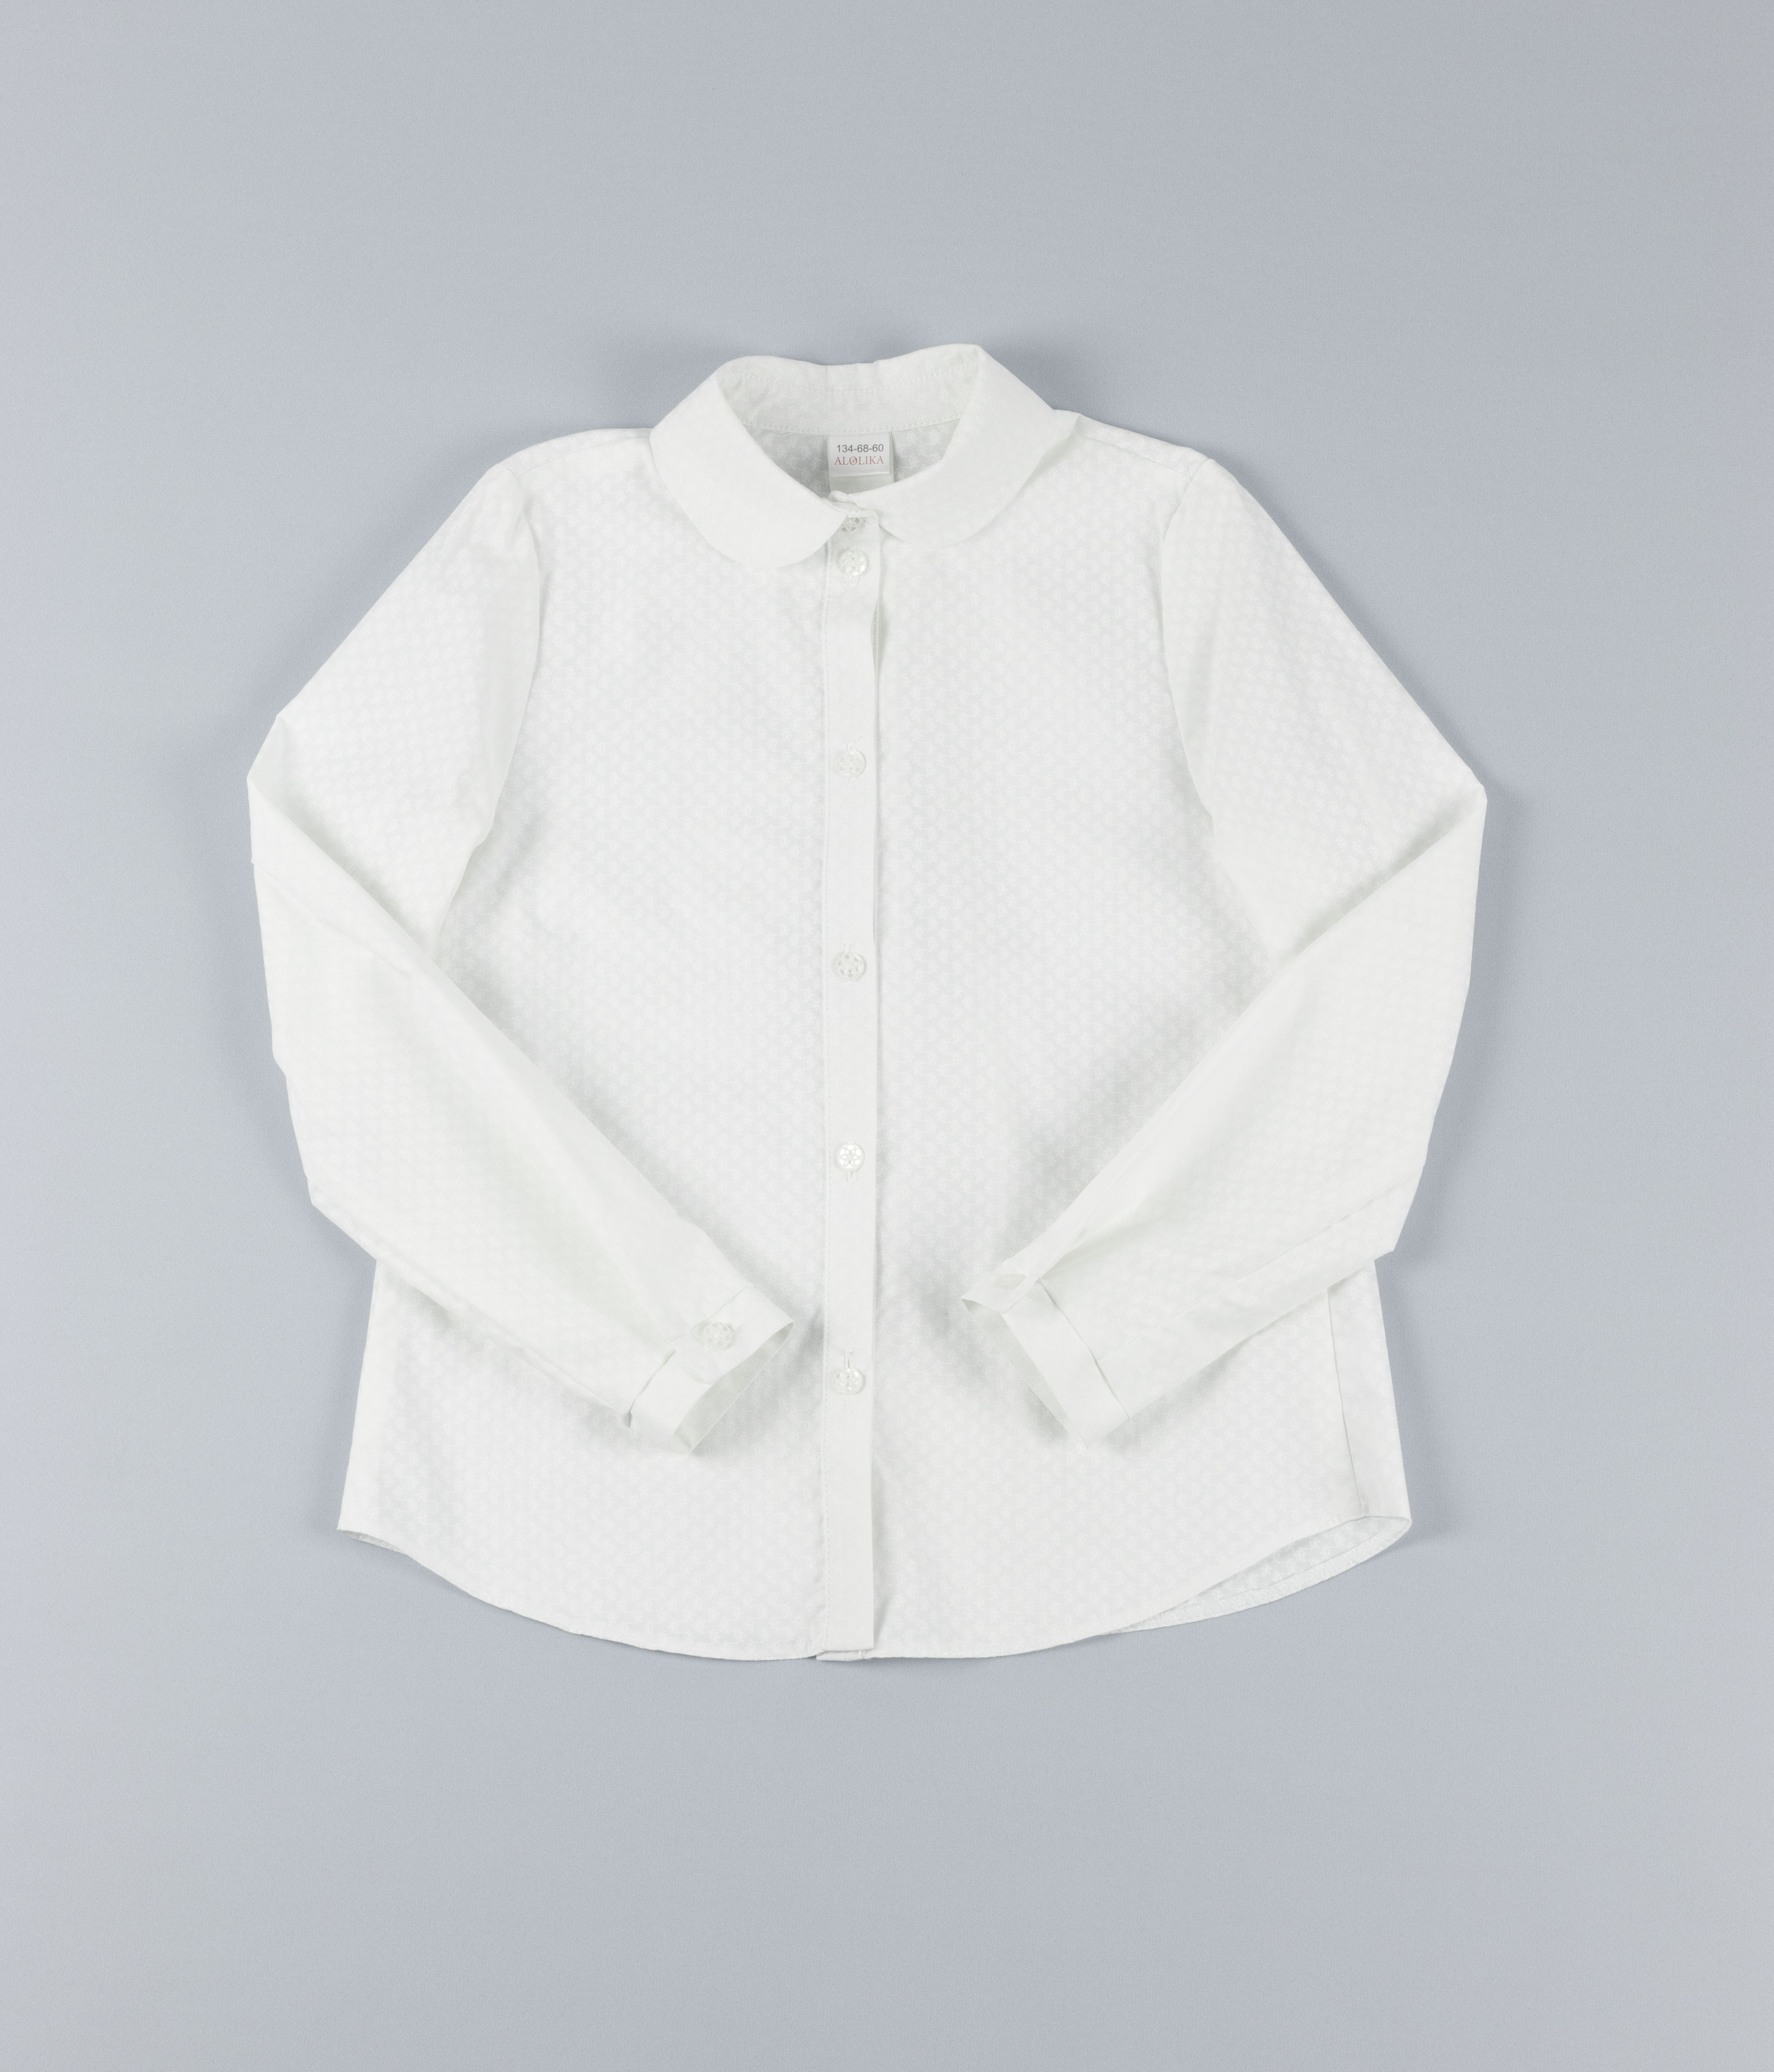 Белая блузка с принтом и со съёмной брошью